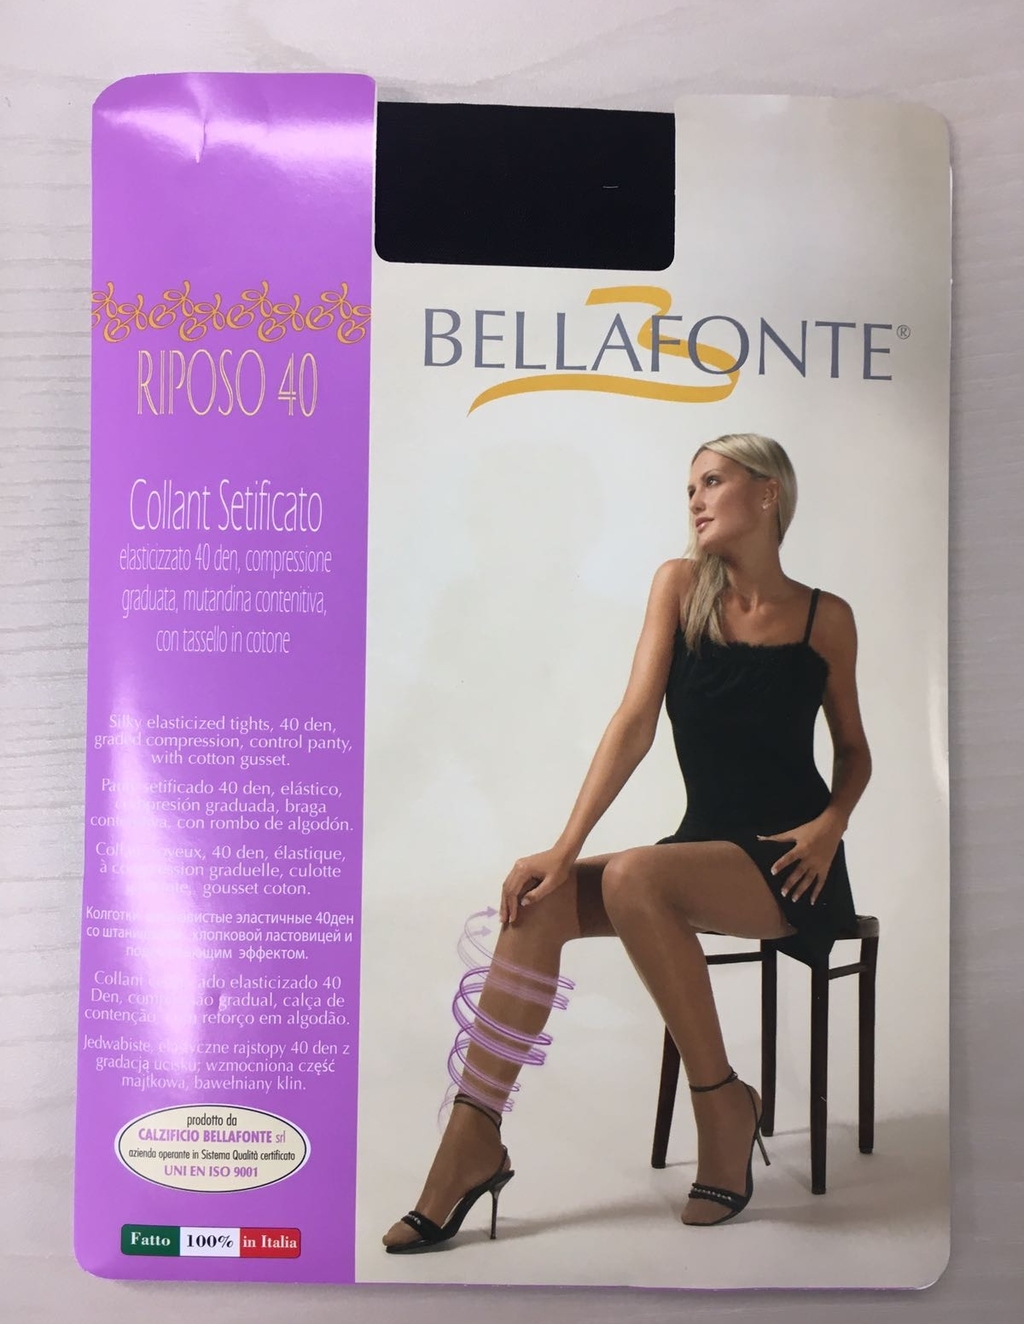 在國泰城出售的 Bellafonte 牌子絲襪，意大利製造，一對25  元。